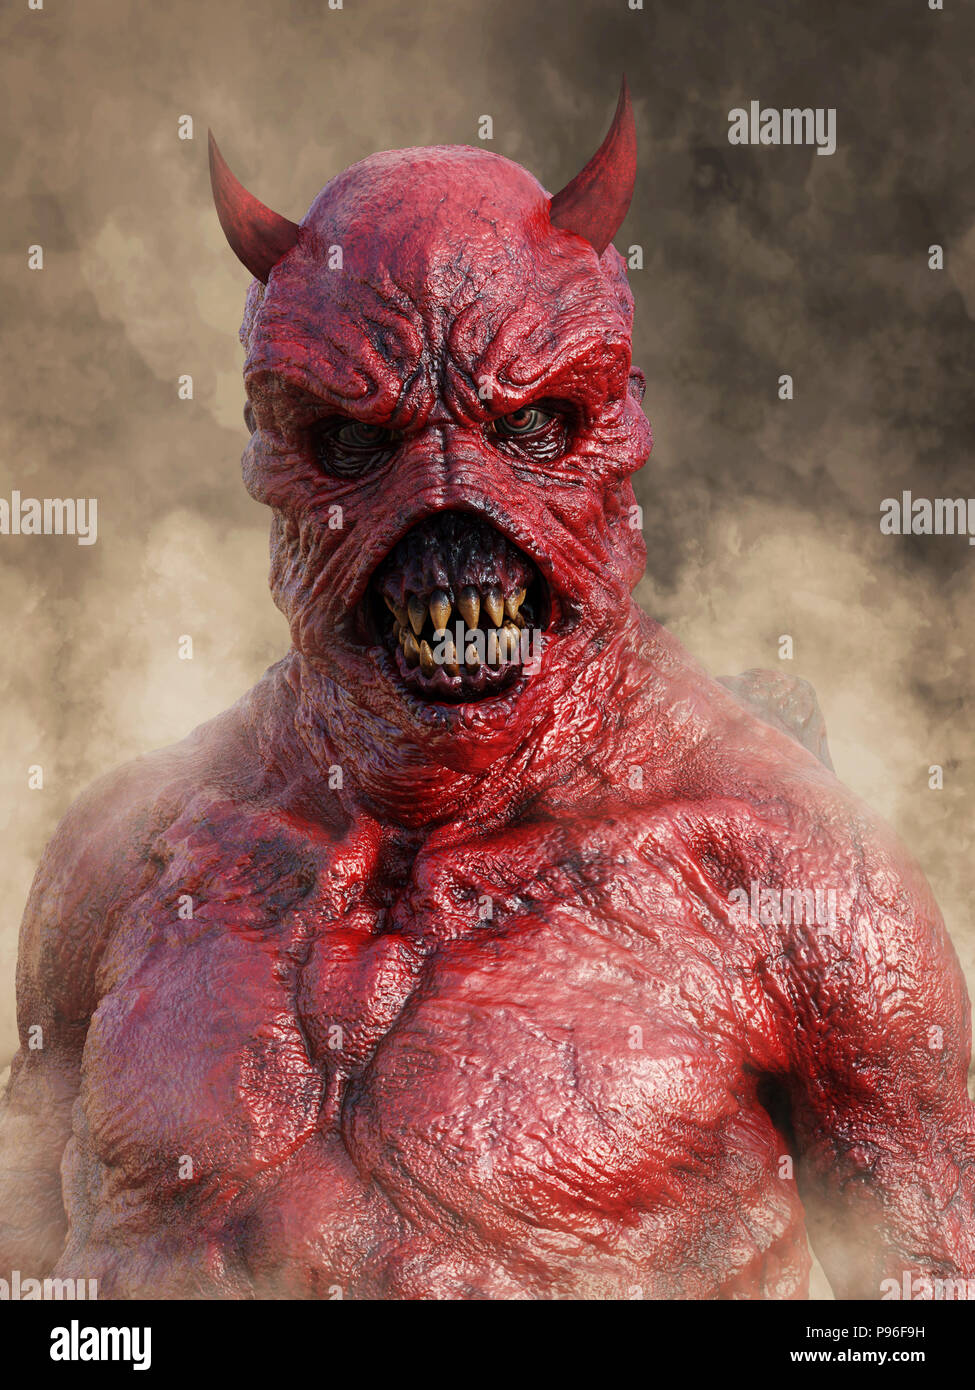 Kopf Porträt eines bedeuten, die dämonische, roter Teufel mit Hörnern, 3D-Rendering. Er ist durch Rauch umgeben. Stockfoto